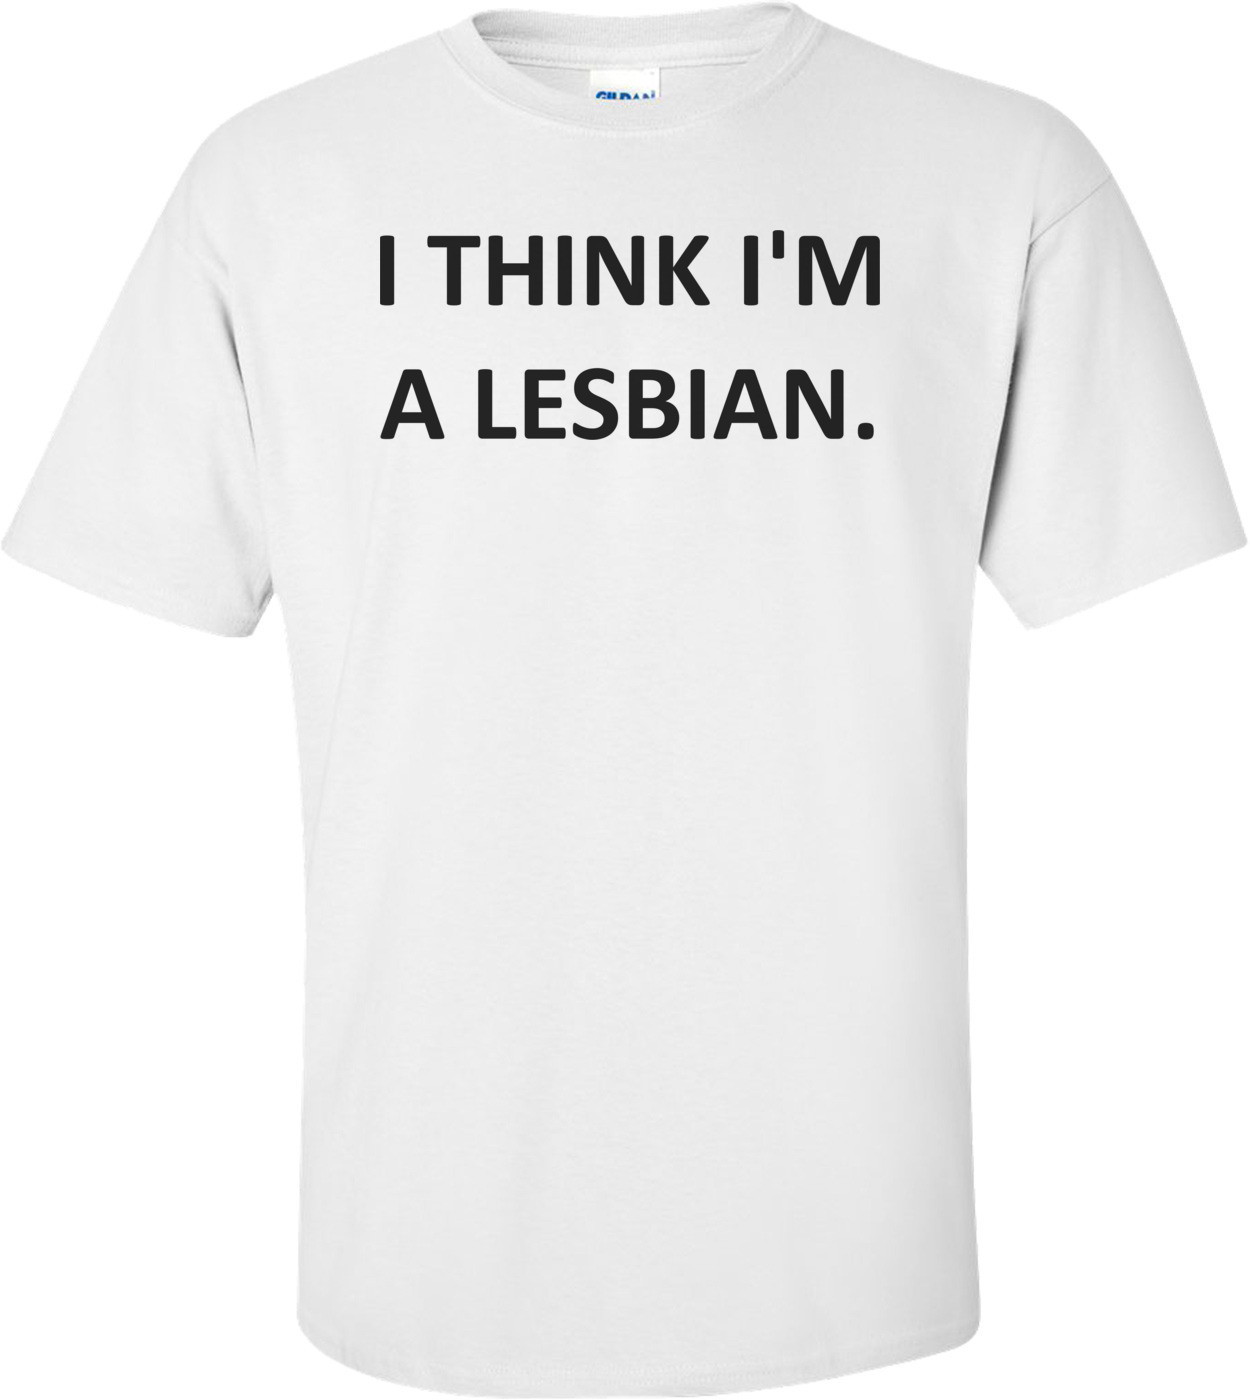 I THINK I'M A LESBIAN. Shirt